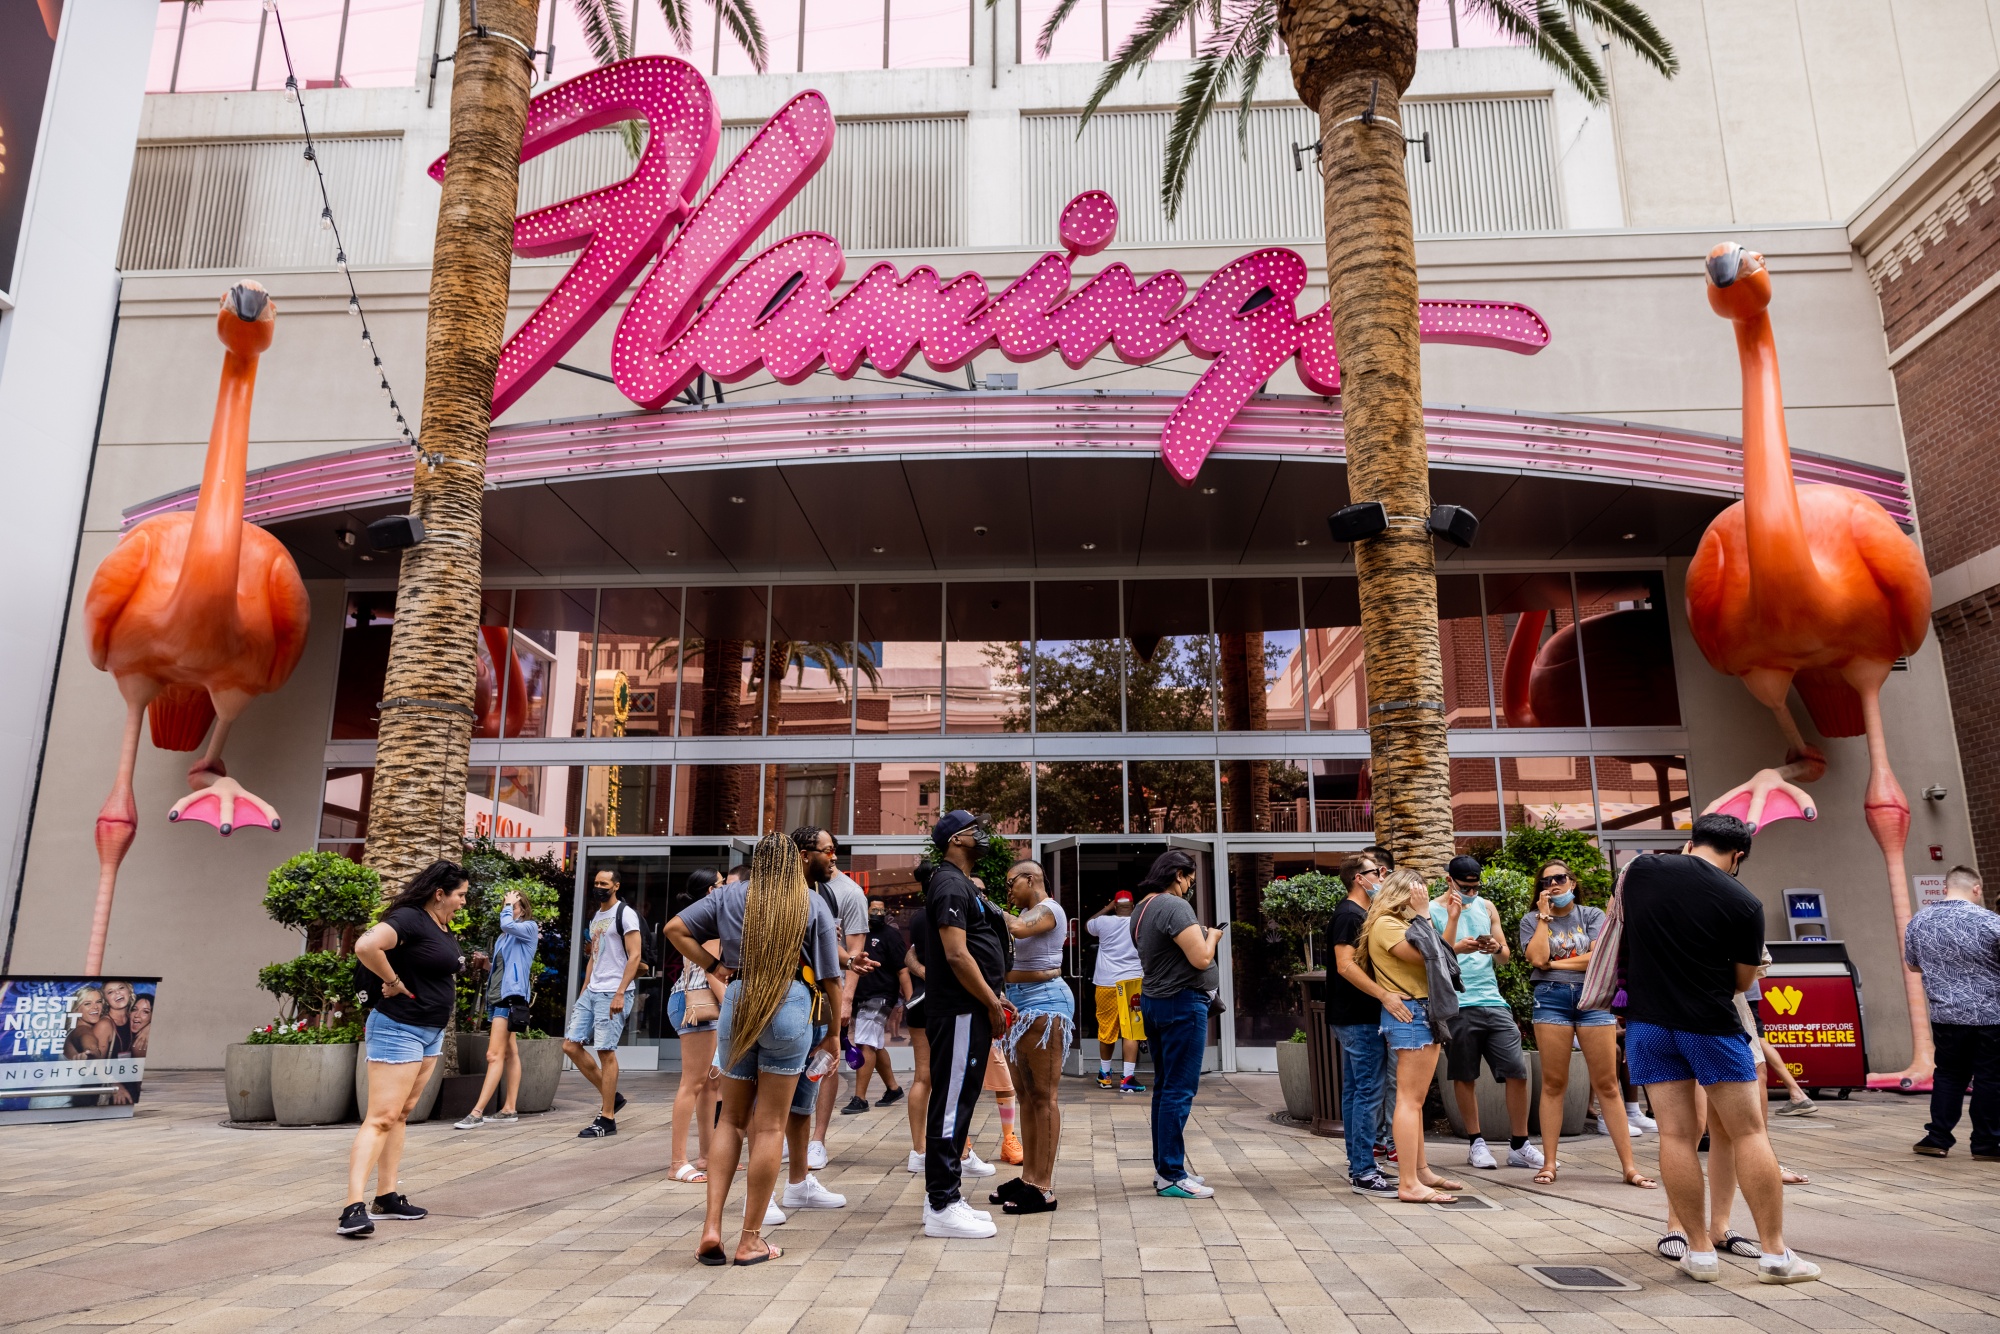 Flamingo Las Vegas - Flamingo Hotel Las Vegas